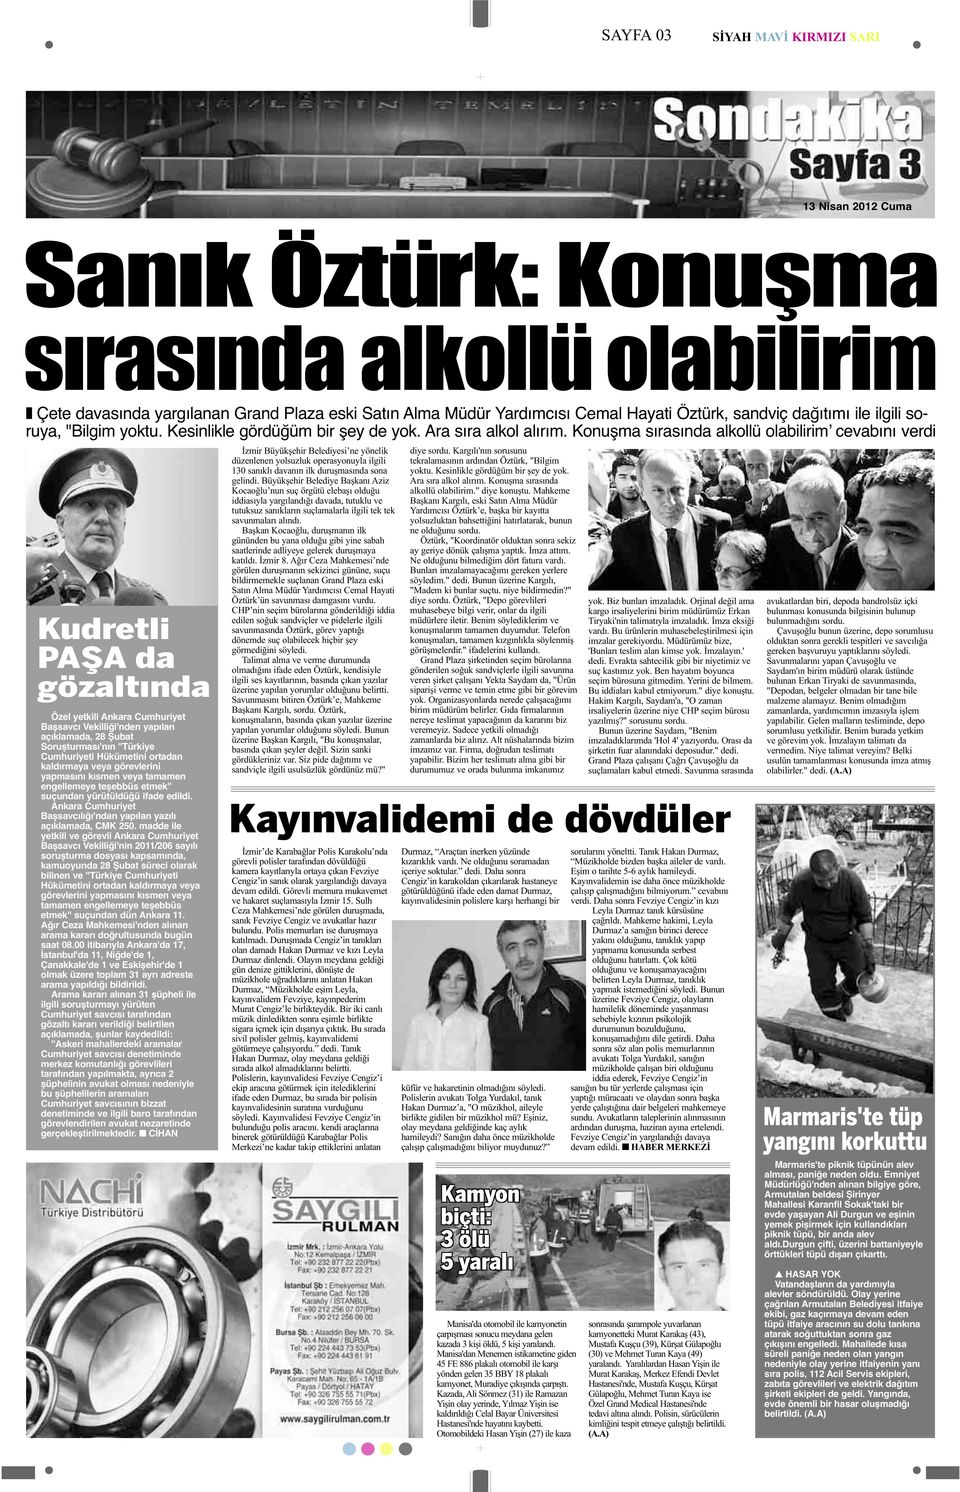 Konuşma sırasında alkollü olabilirimʼ cevabını verdi Kudretli PAŞA da gözaltında Özel yetkili Ankara Cumhuriyet Başsavcı Vekilliği'nden yapılan açıklamada, 28 Şubat Soruşturması'nın ''Türkiye